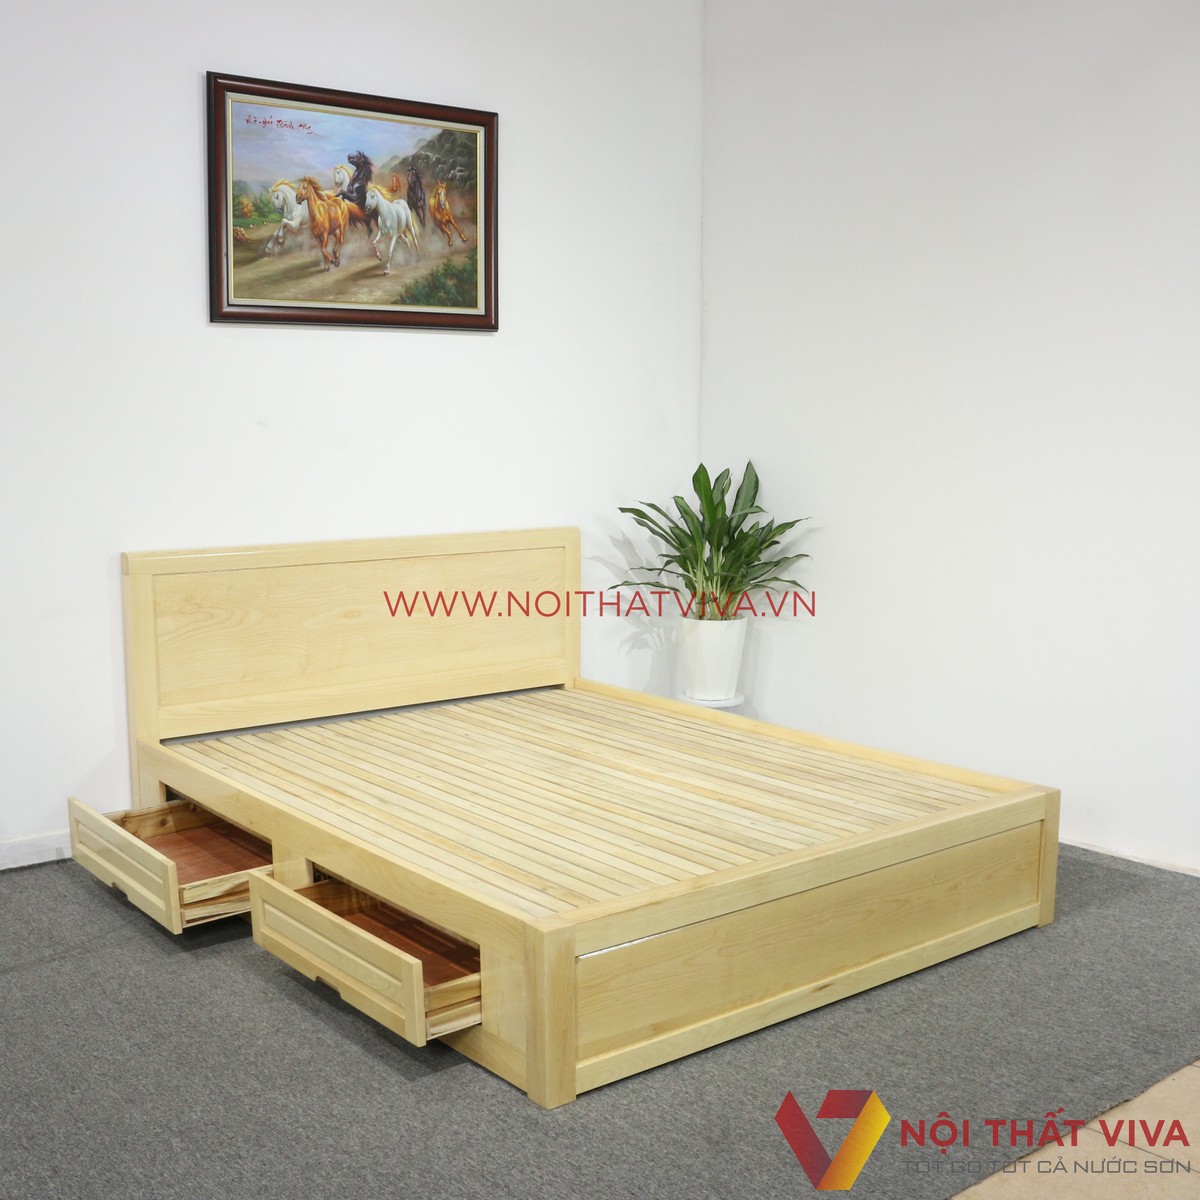 Giường ngủ gỗ sồi Nga:  Thăng hạng phong cách phòng ngủ nhà mình!